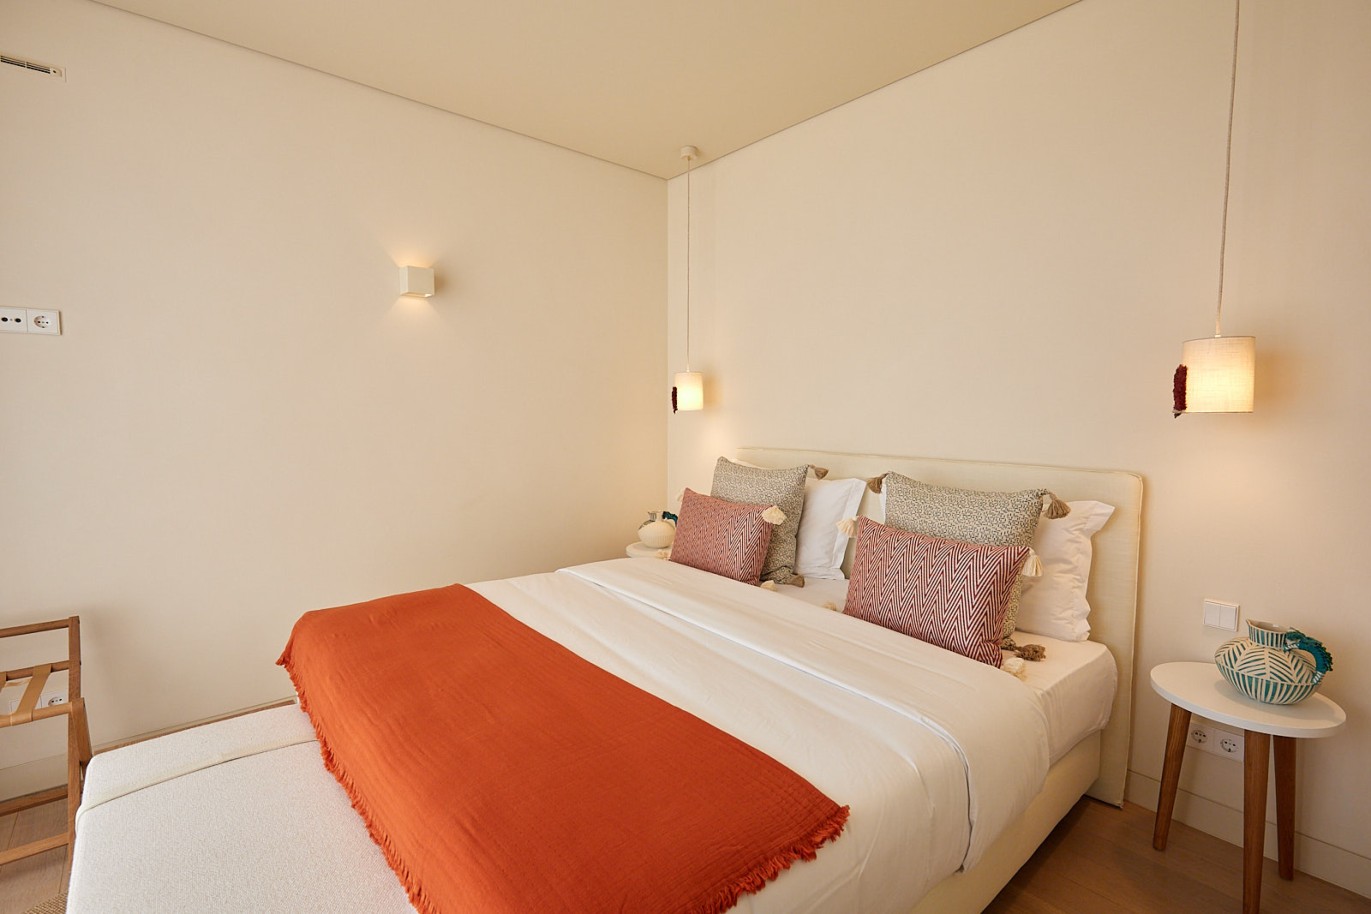 3 bedroom flat in resort, for sale in Porches, Algarve_230735